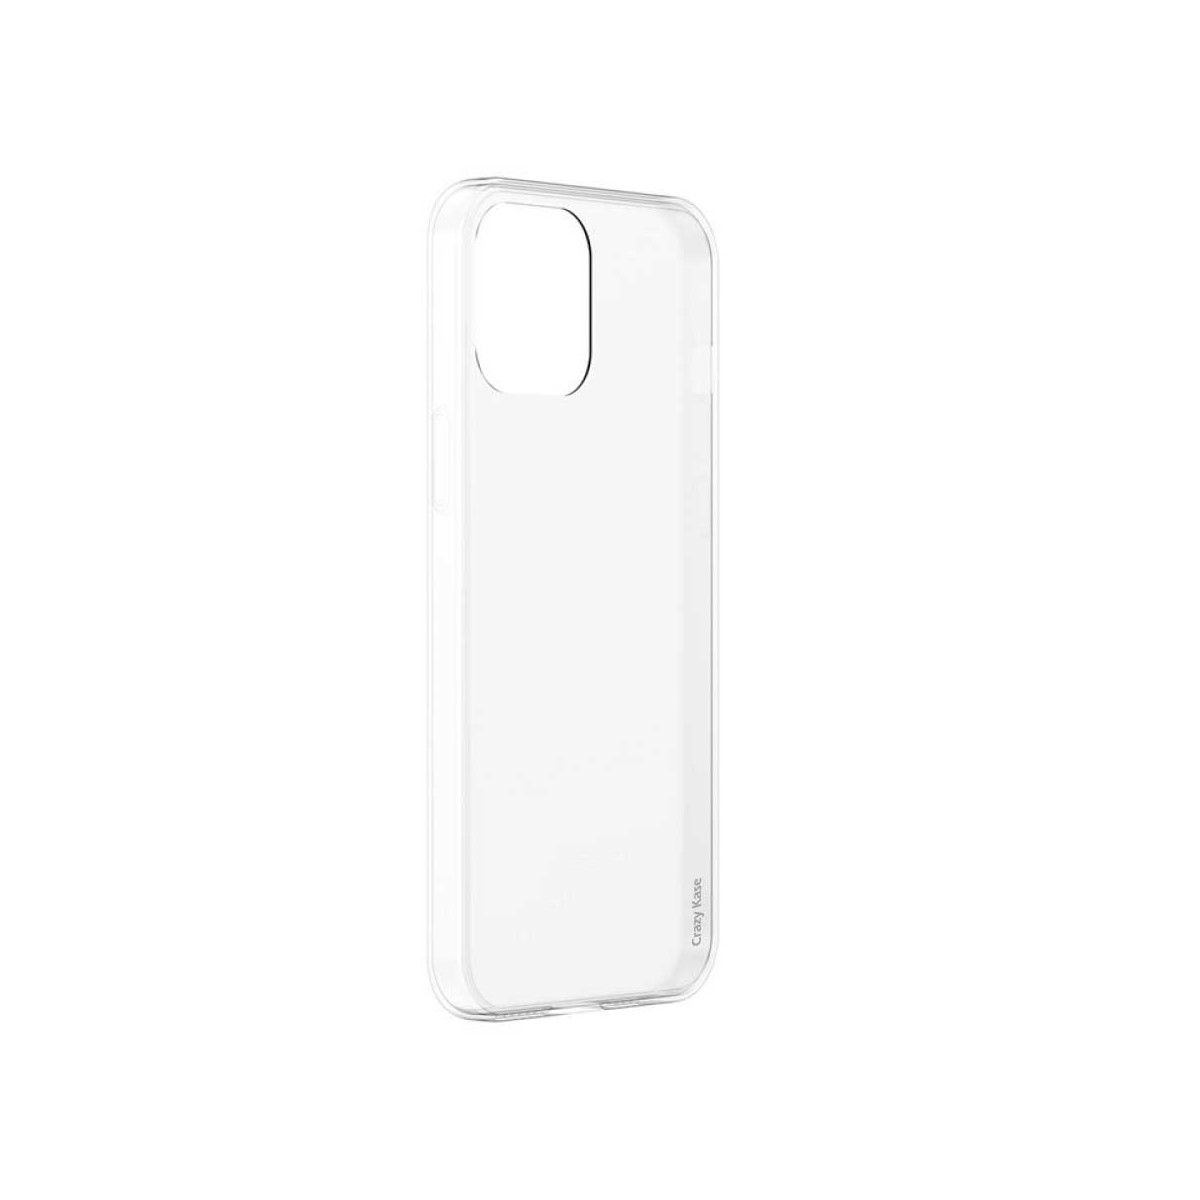 Crazy Kase Coque iPhone 12 Pro (6,1) Transparente souple